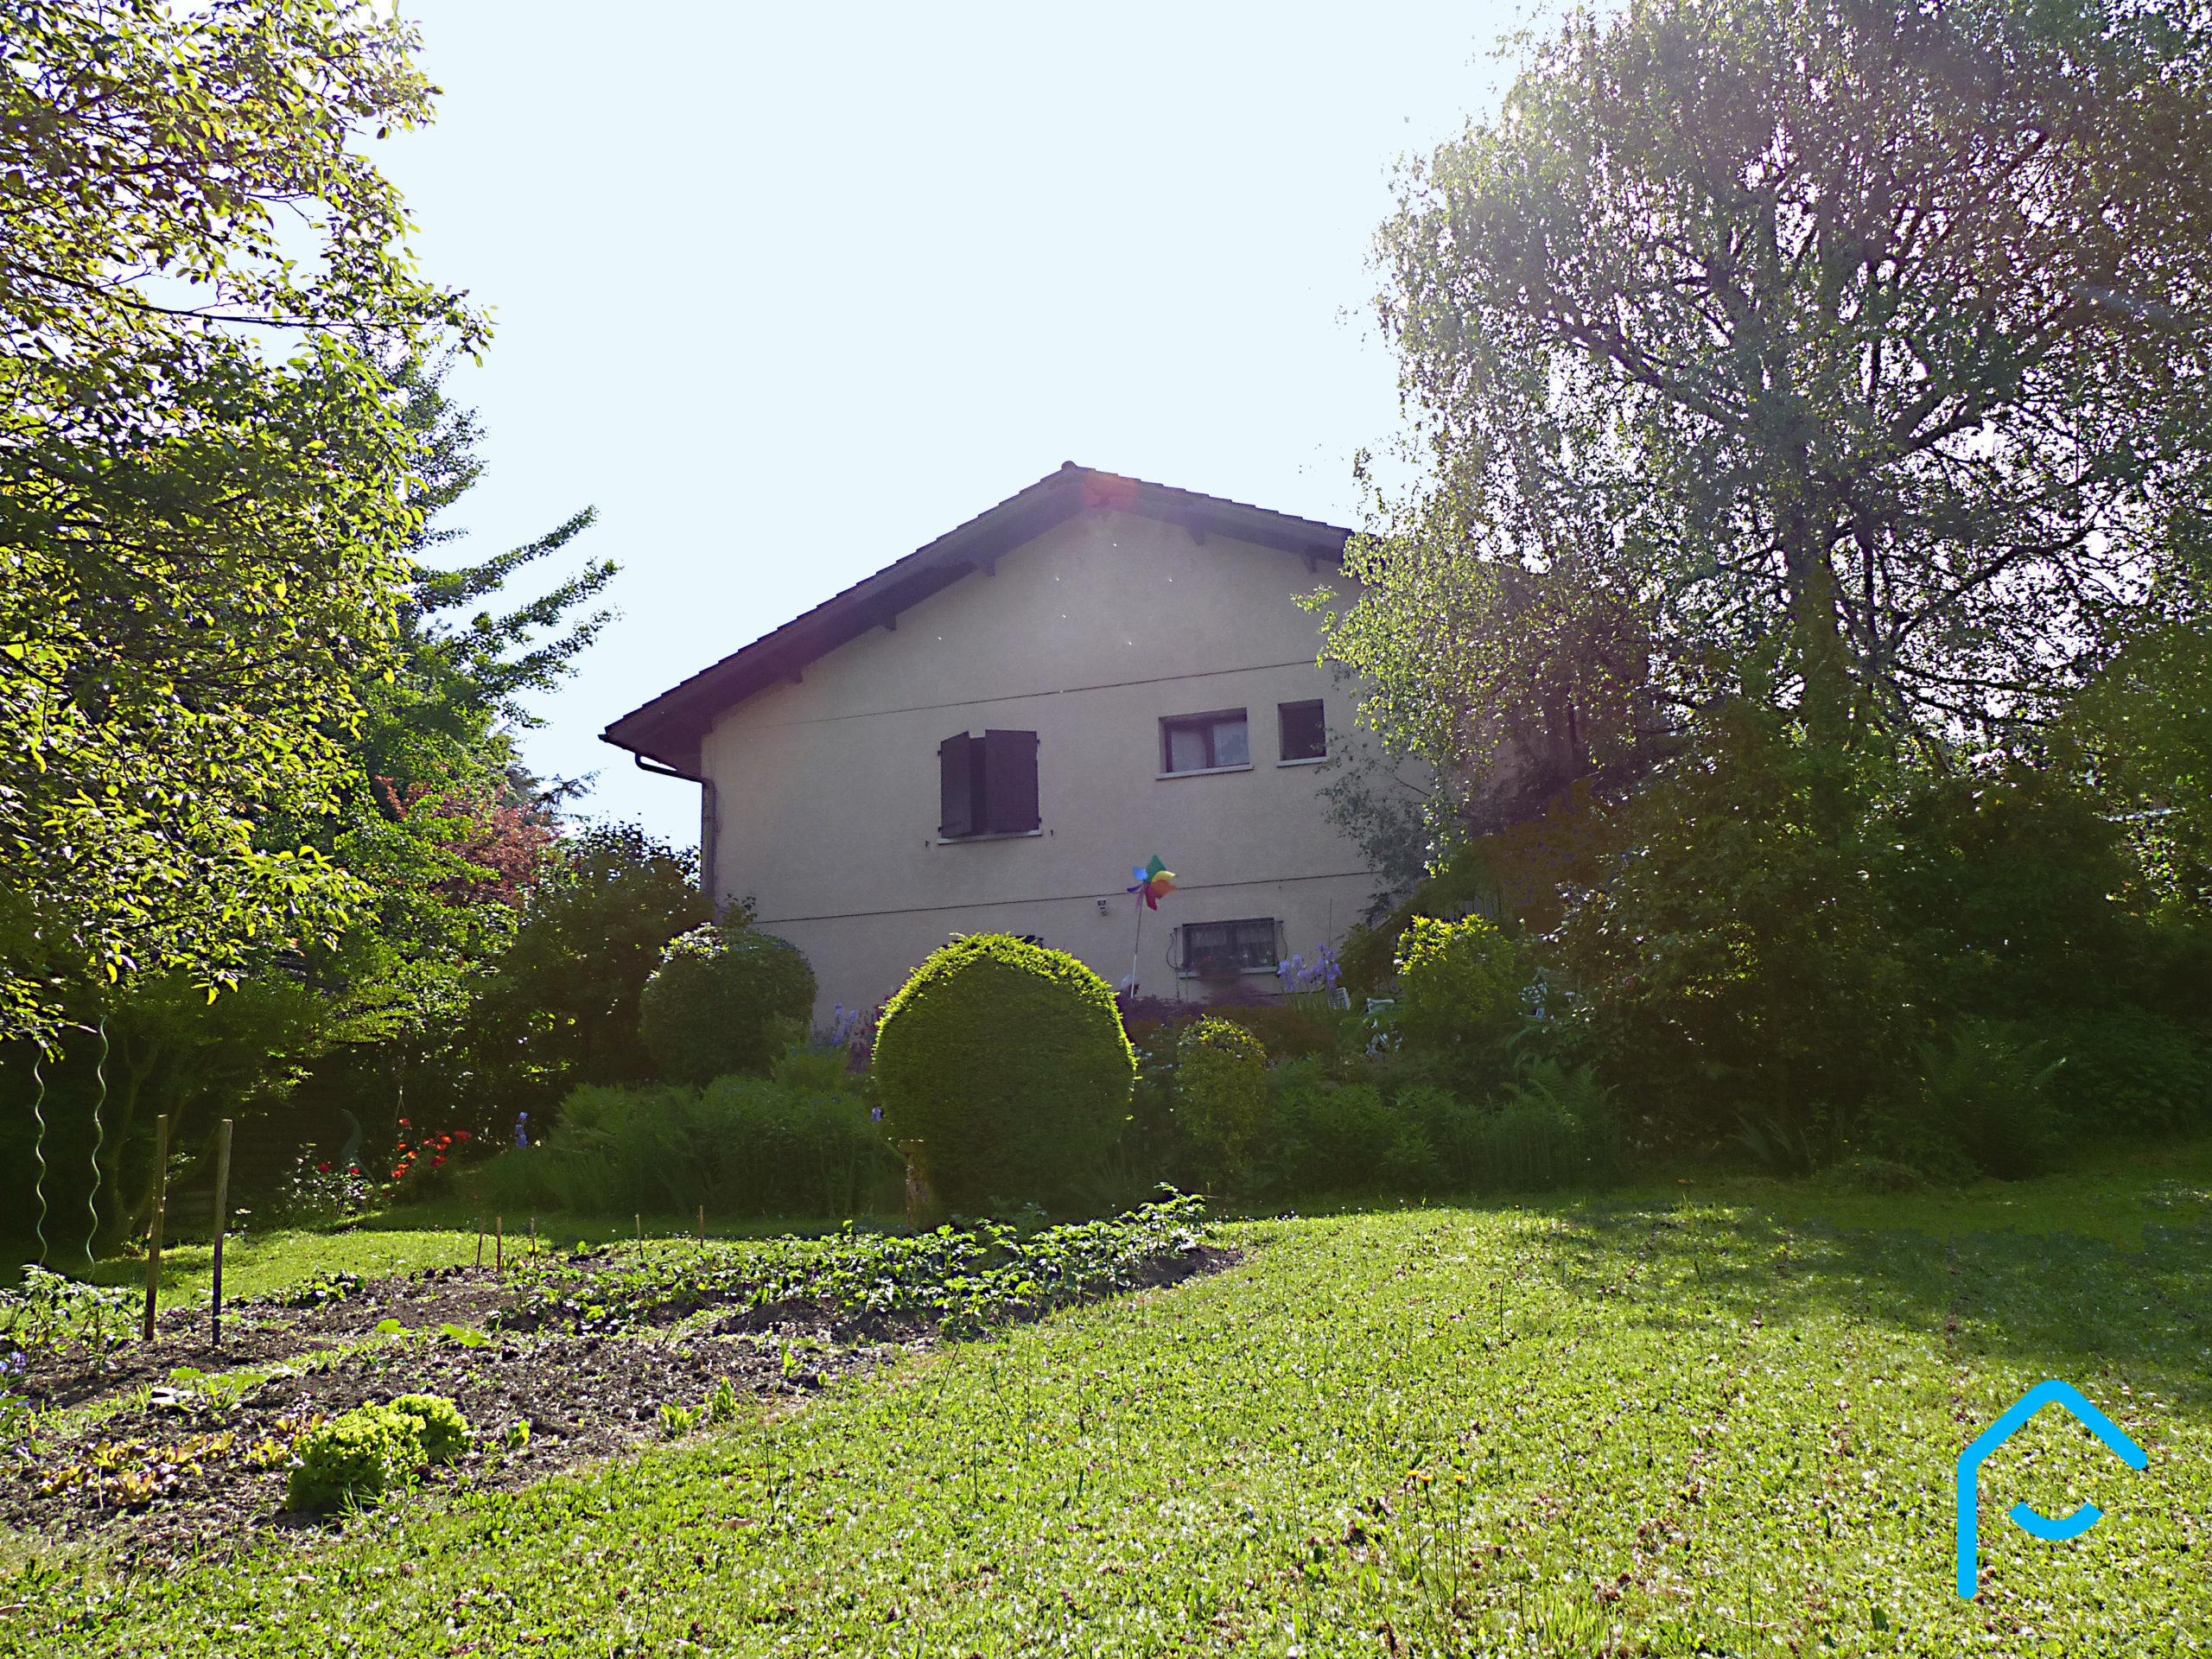 A vendre maison individuelle Jacob Bellecombette Savoie Chambéry terrain piscine jardin vue 2